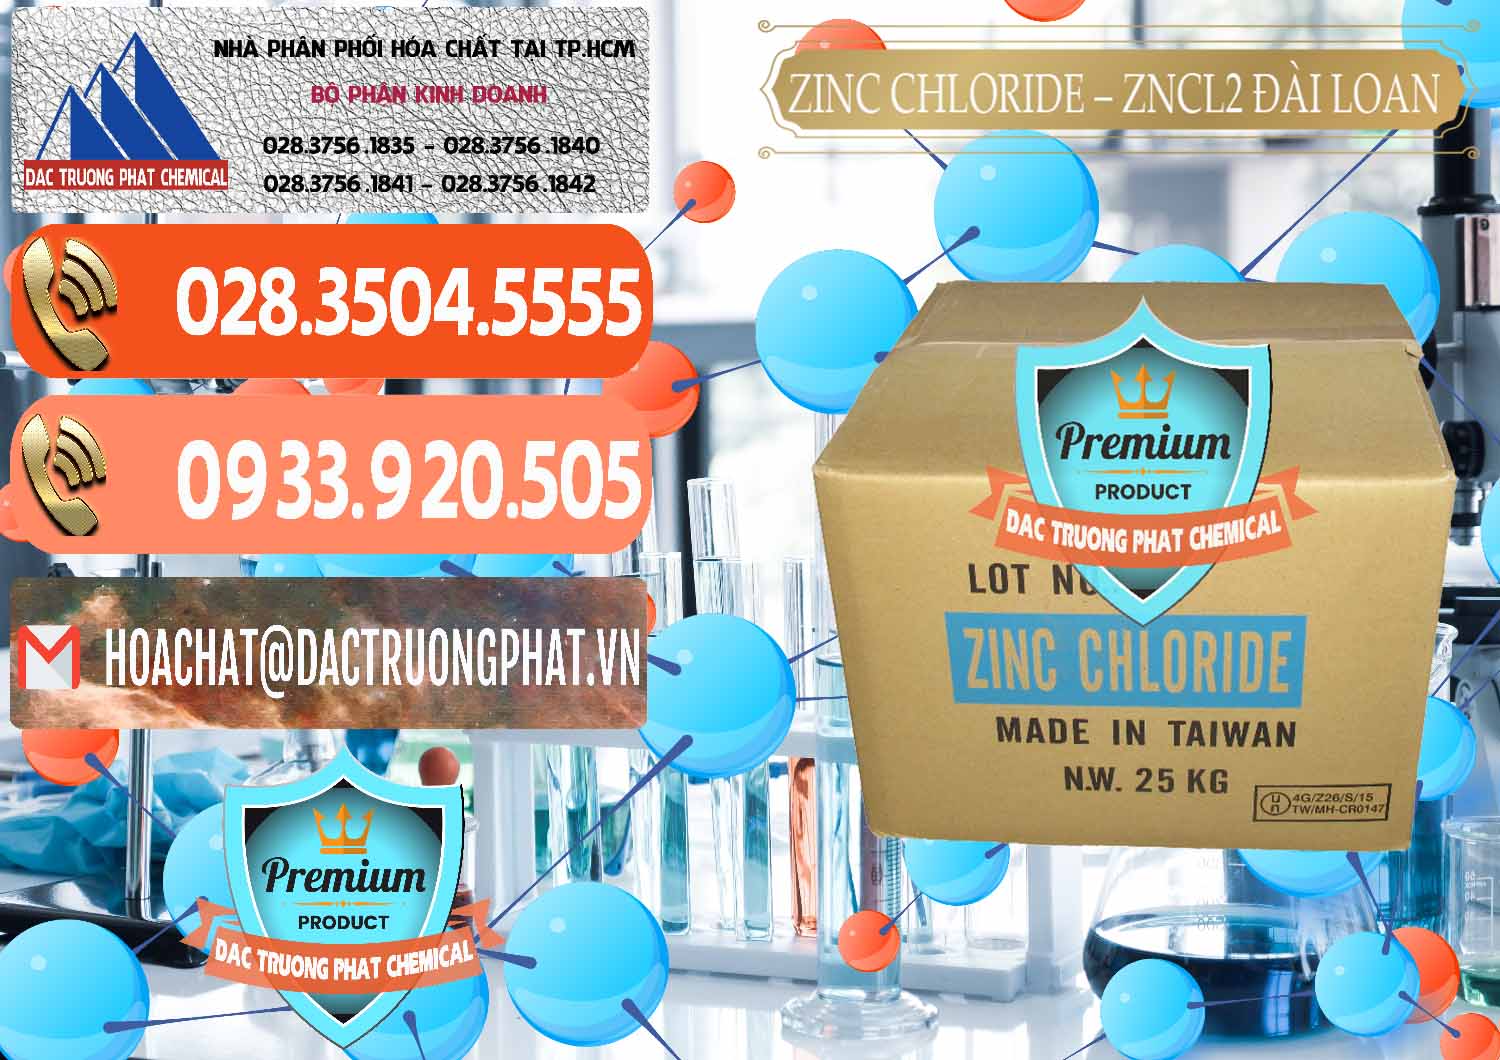 Công ty chuyên cung cấp & bán Zinc Chloride - ZNCL2 96% Đài Loan Taiwan - 0178 - Nơi chuyên bán và phân phối hóa chất tại TP.HCM - hoachatmientay.com